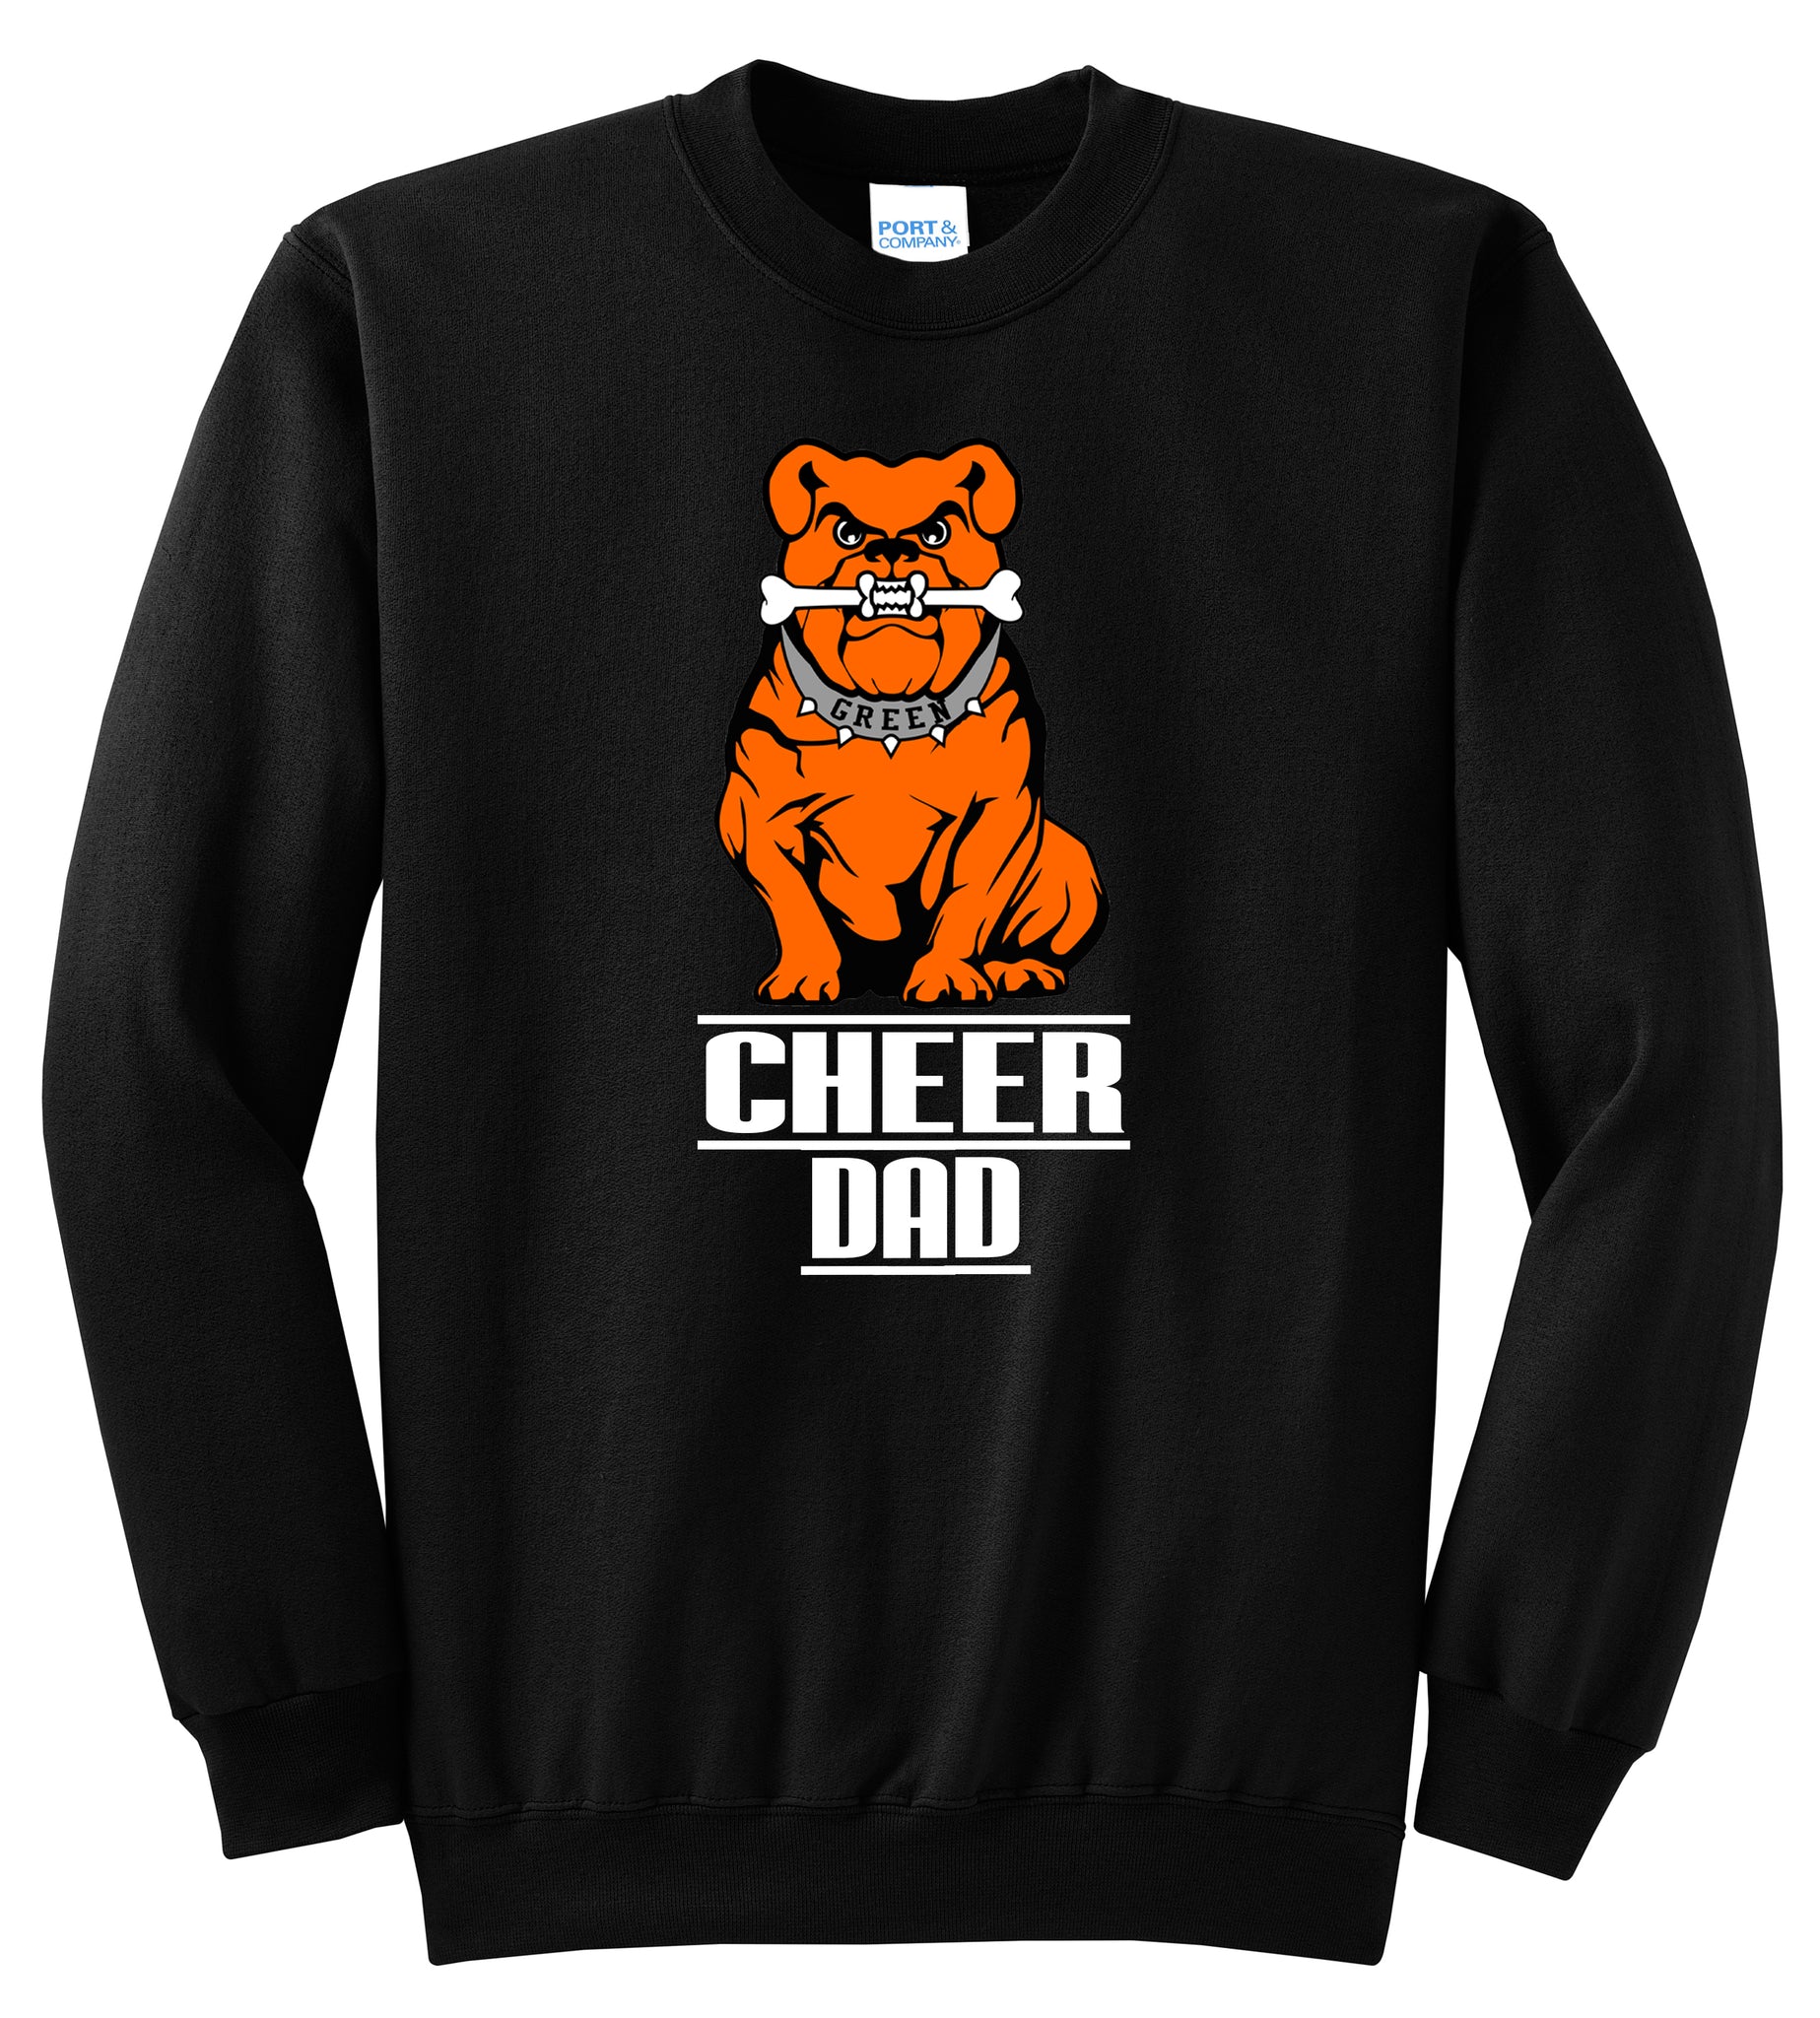 Green Cheer DAD Crewneck Sweatshirt